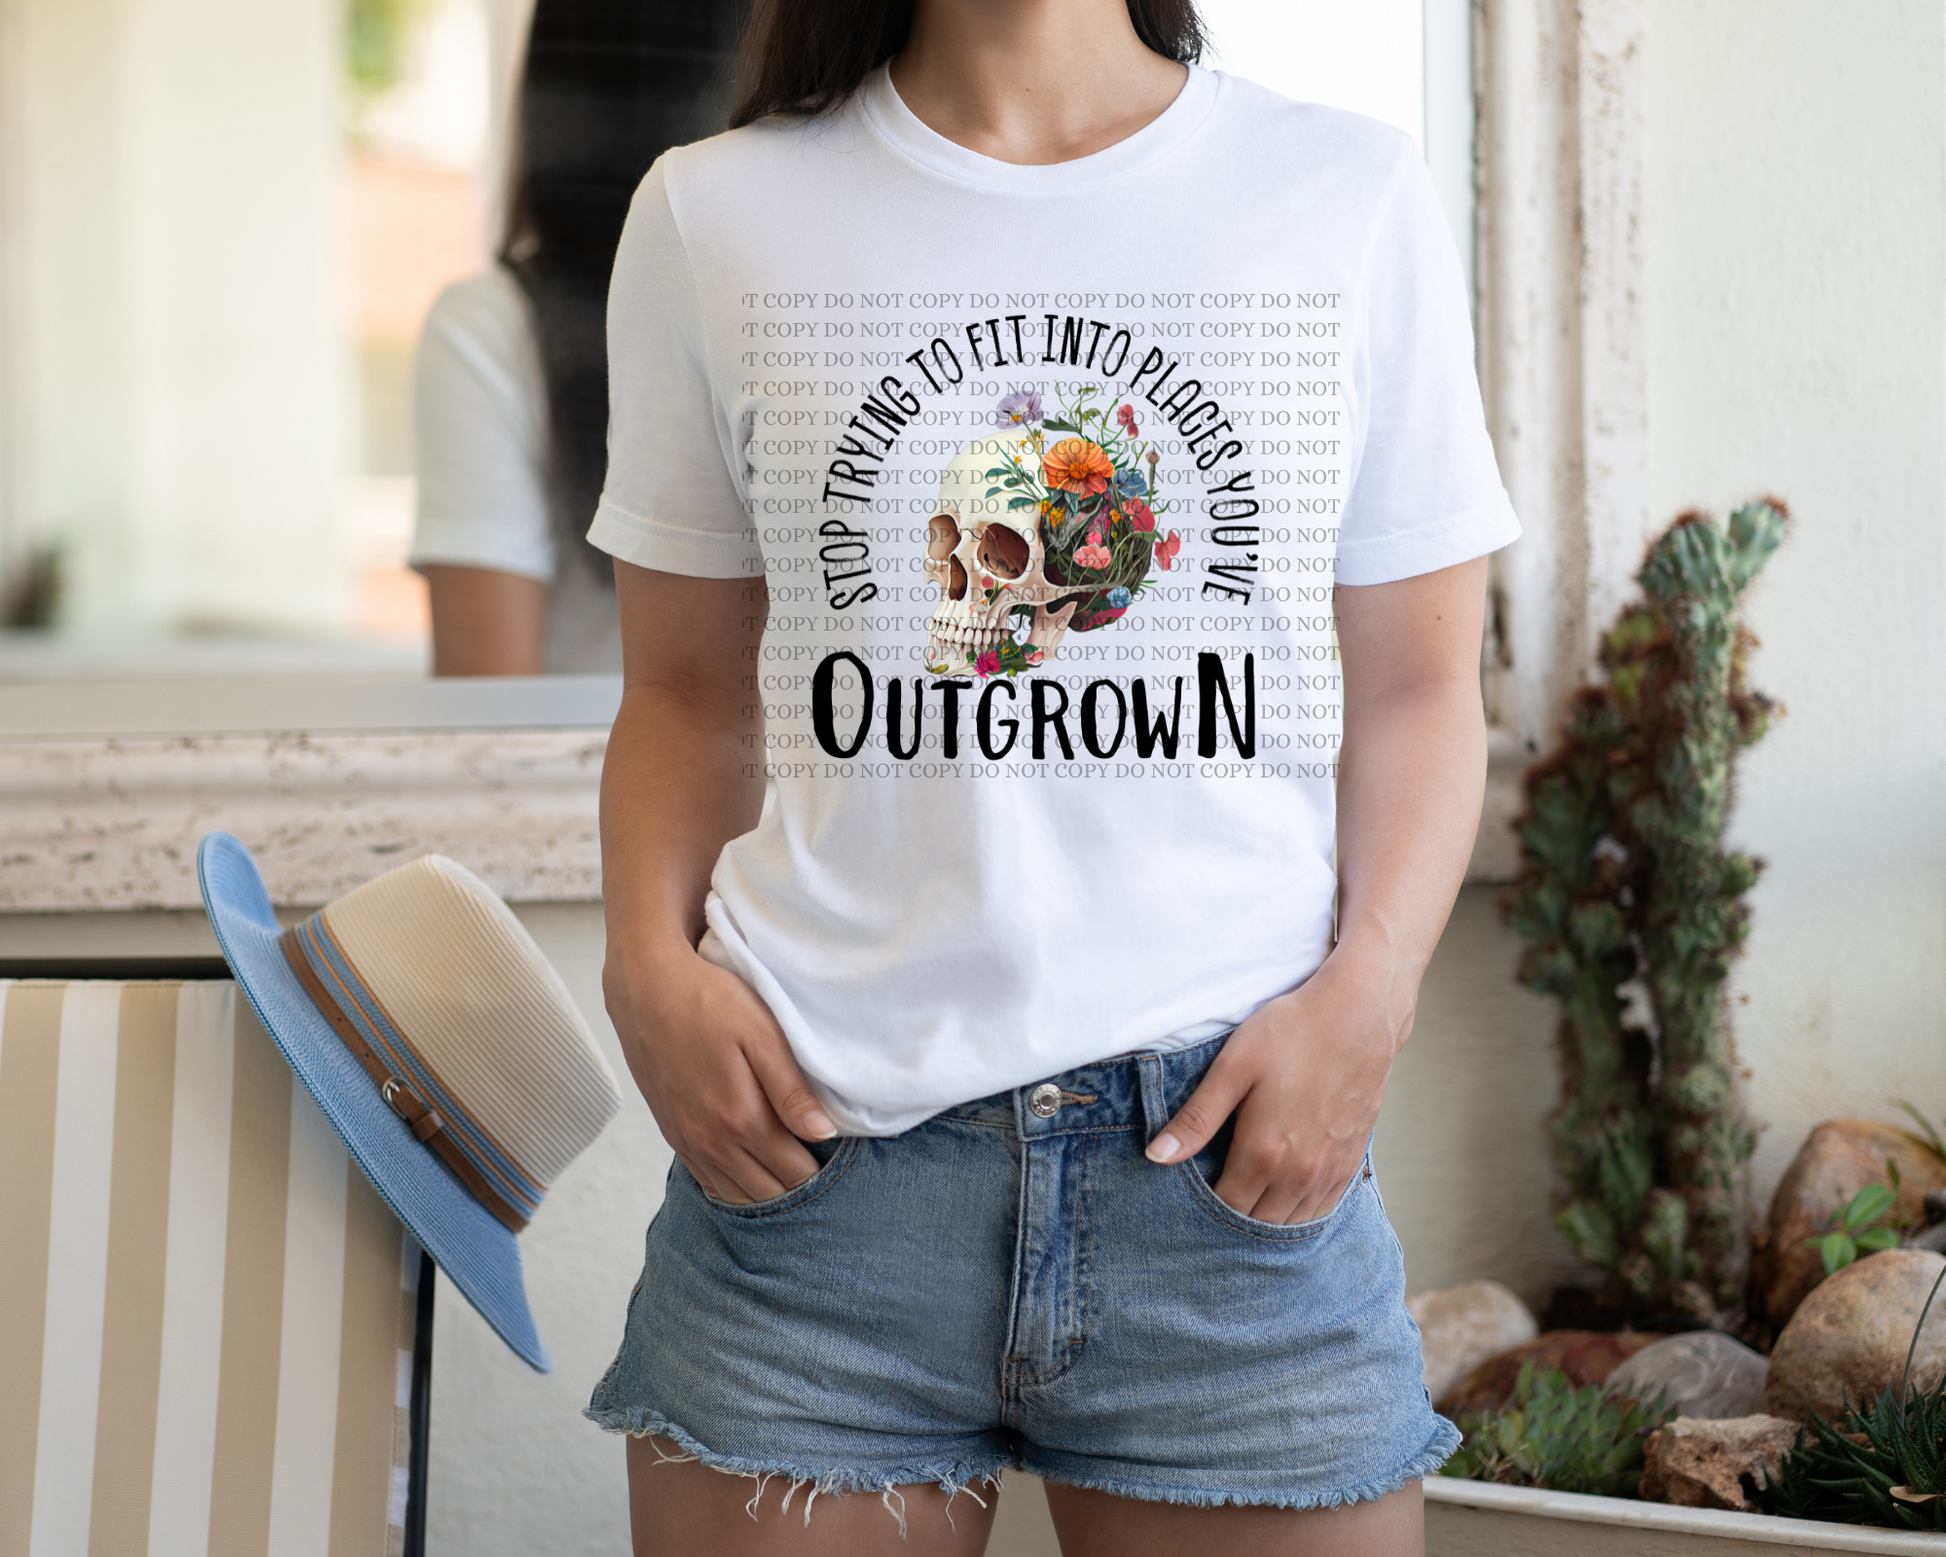 Outgrown in a white shirt. - Mayan Sub Shop